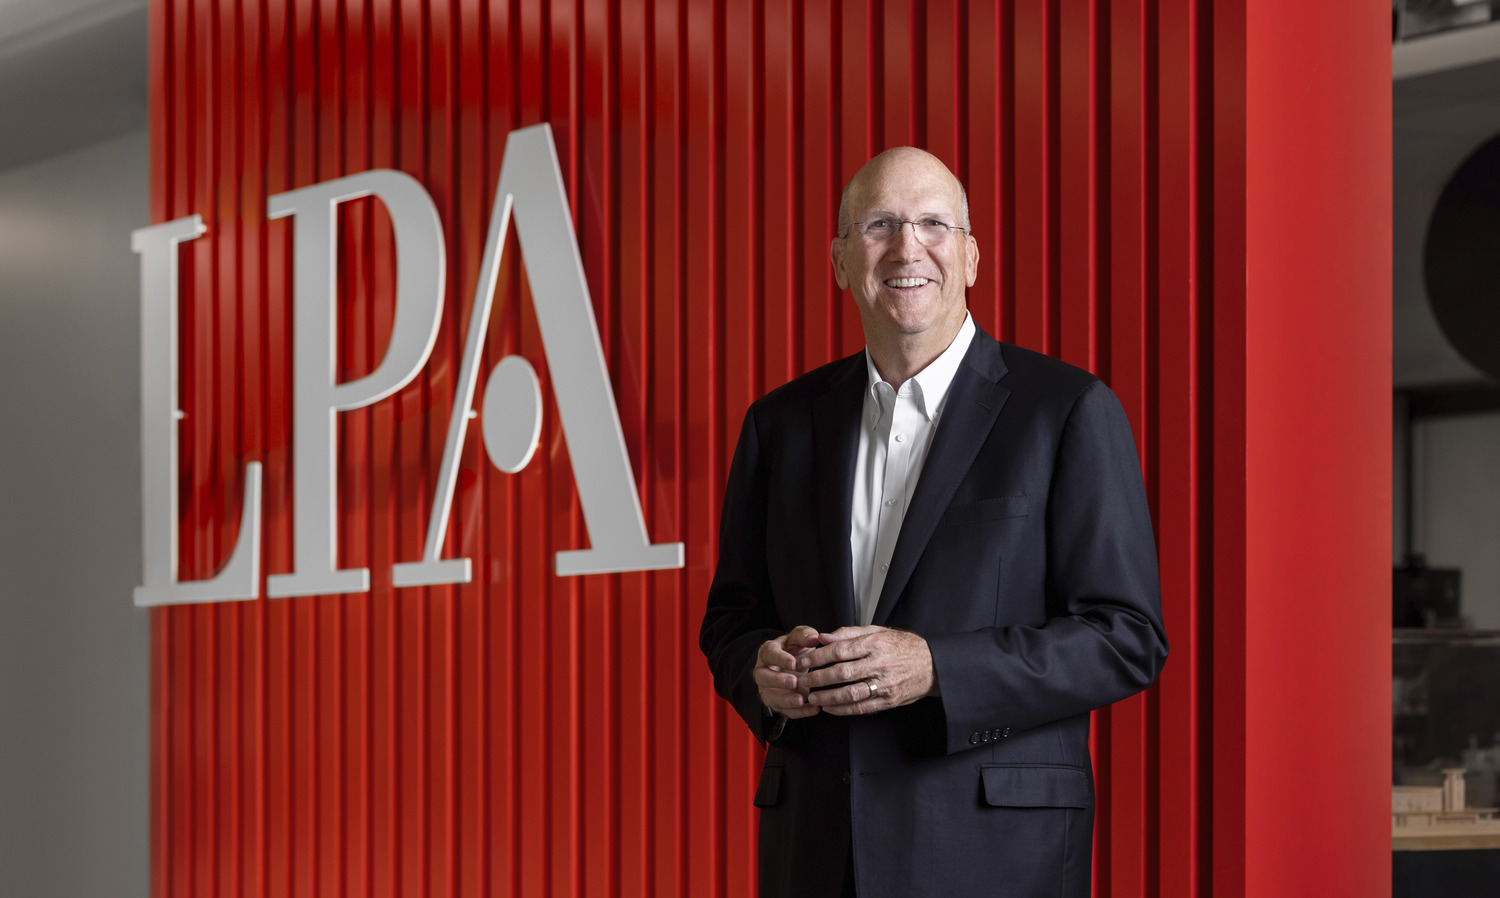 LPA President Dan Heinfeld announced retirement 